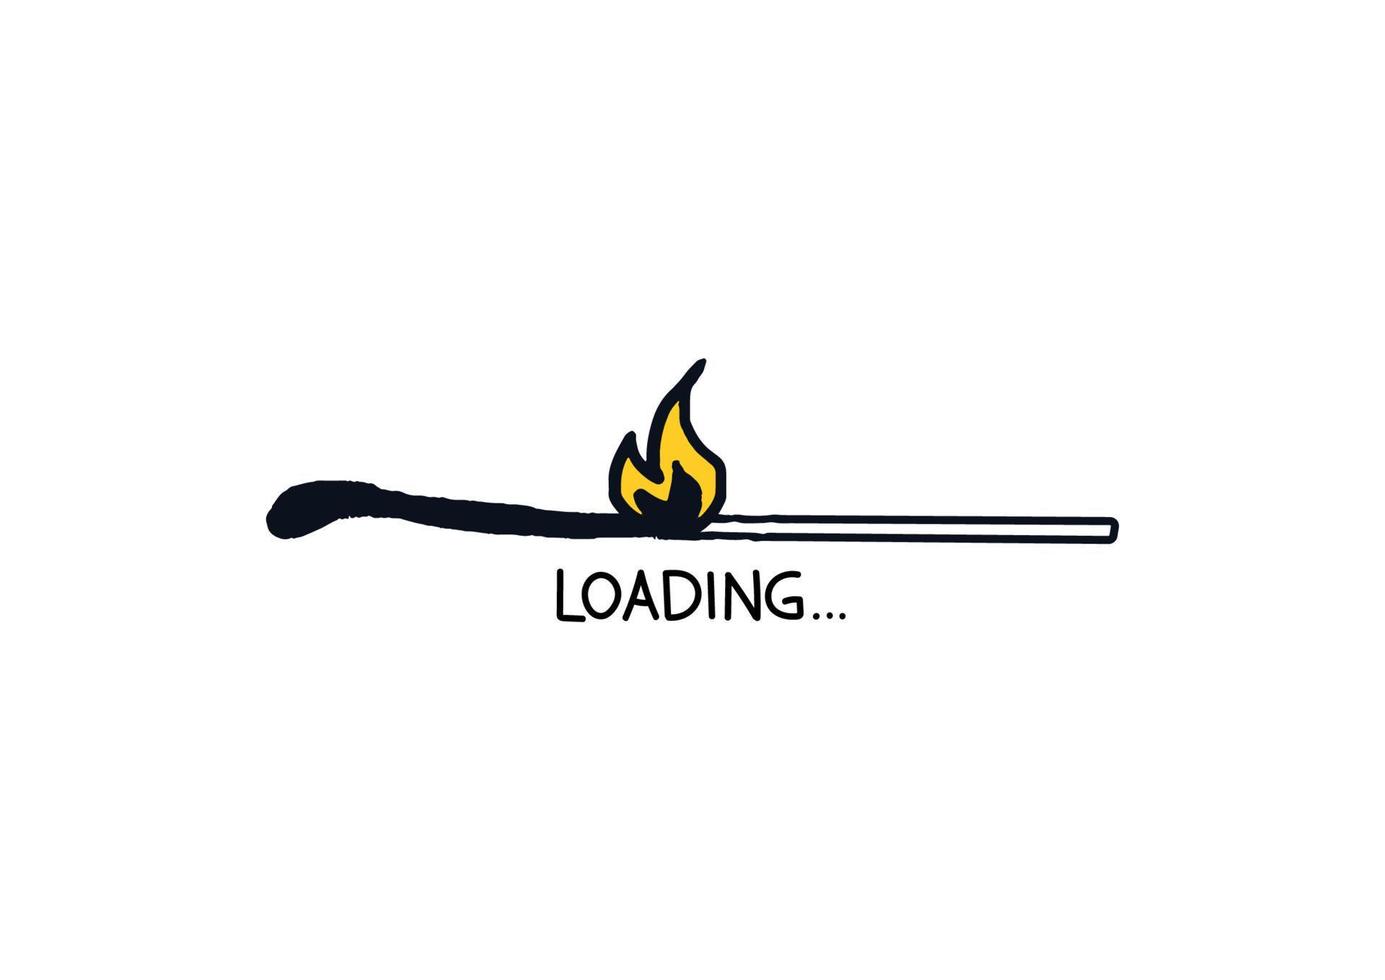 jogo de queima de doodle da barra de carregamento. símbolo de regressão de carga desenhado à mão. ilustração de estoque de vetor queimar jogo download página da web.